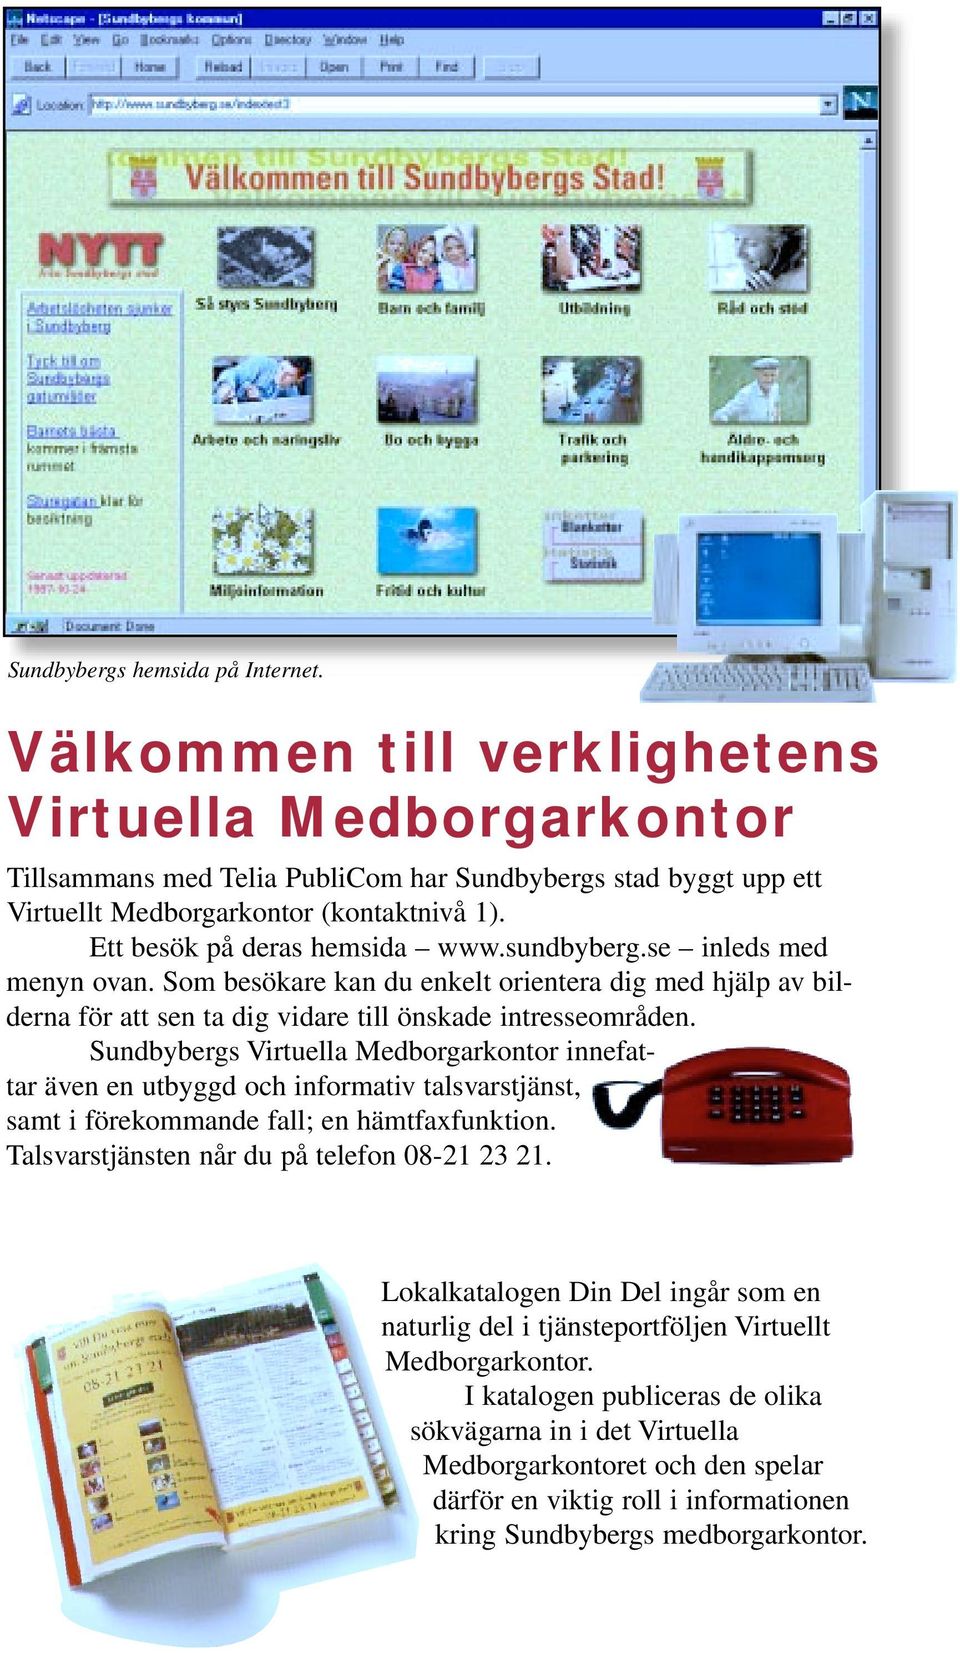 Sundbybergs Virtuella Medborgarkontor innefattar även en utbyggd och informativ talsvarstjänst, samt i förekommande fall; en hämtfaxfunktion. Talsvarstjänsten når du på telefon 08-21 23 21.